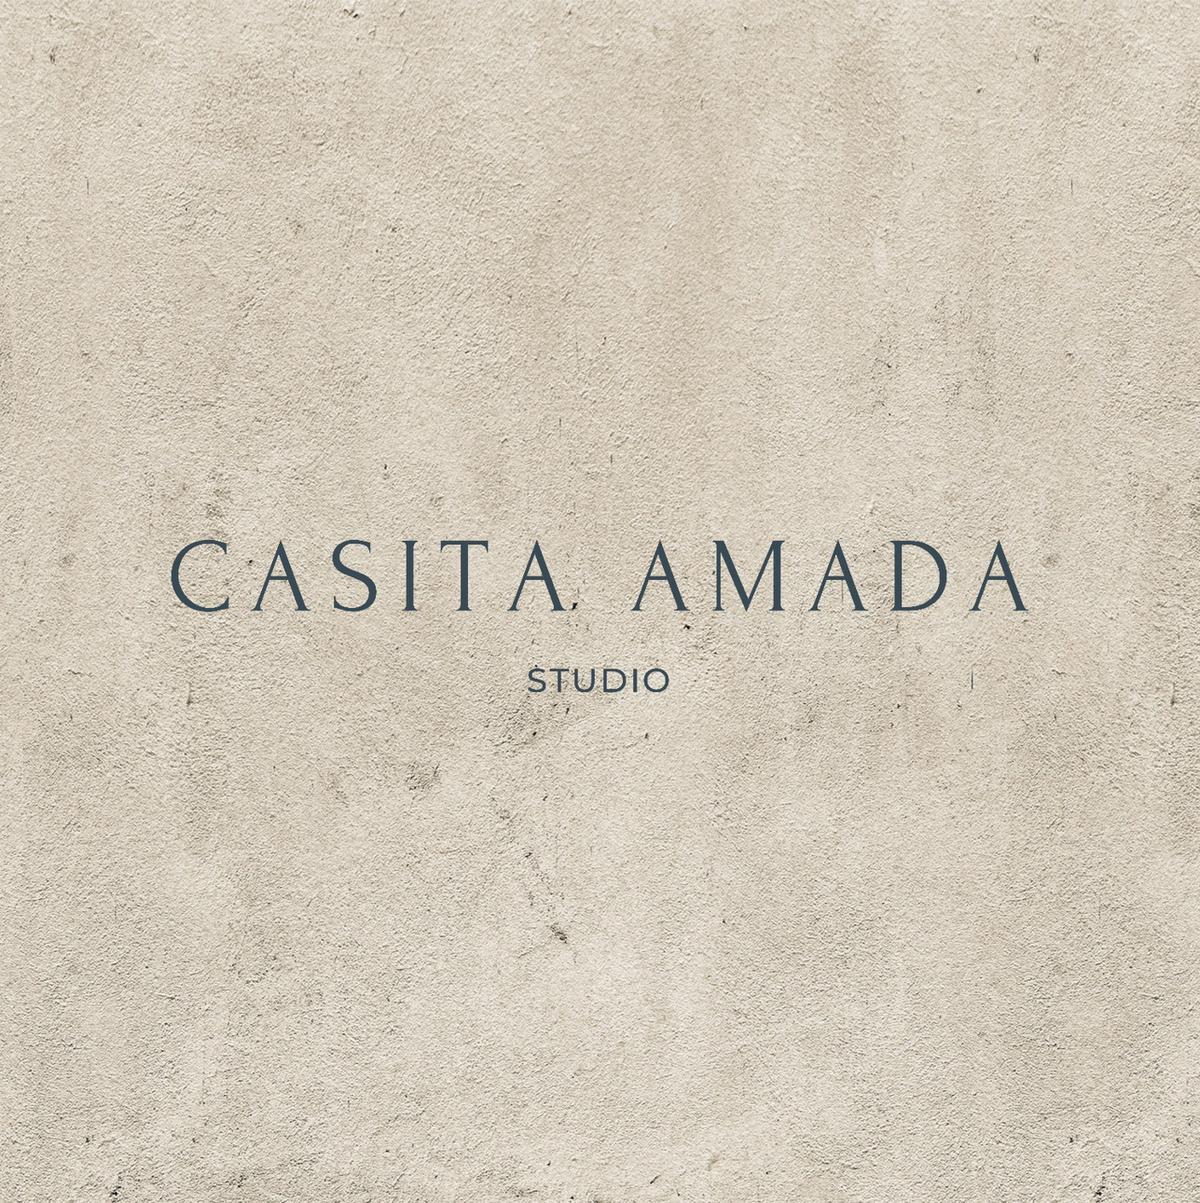 Casita Amada 's images